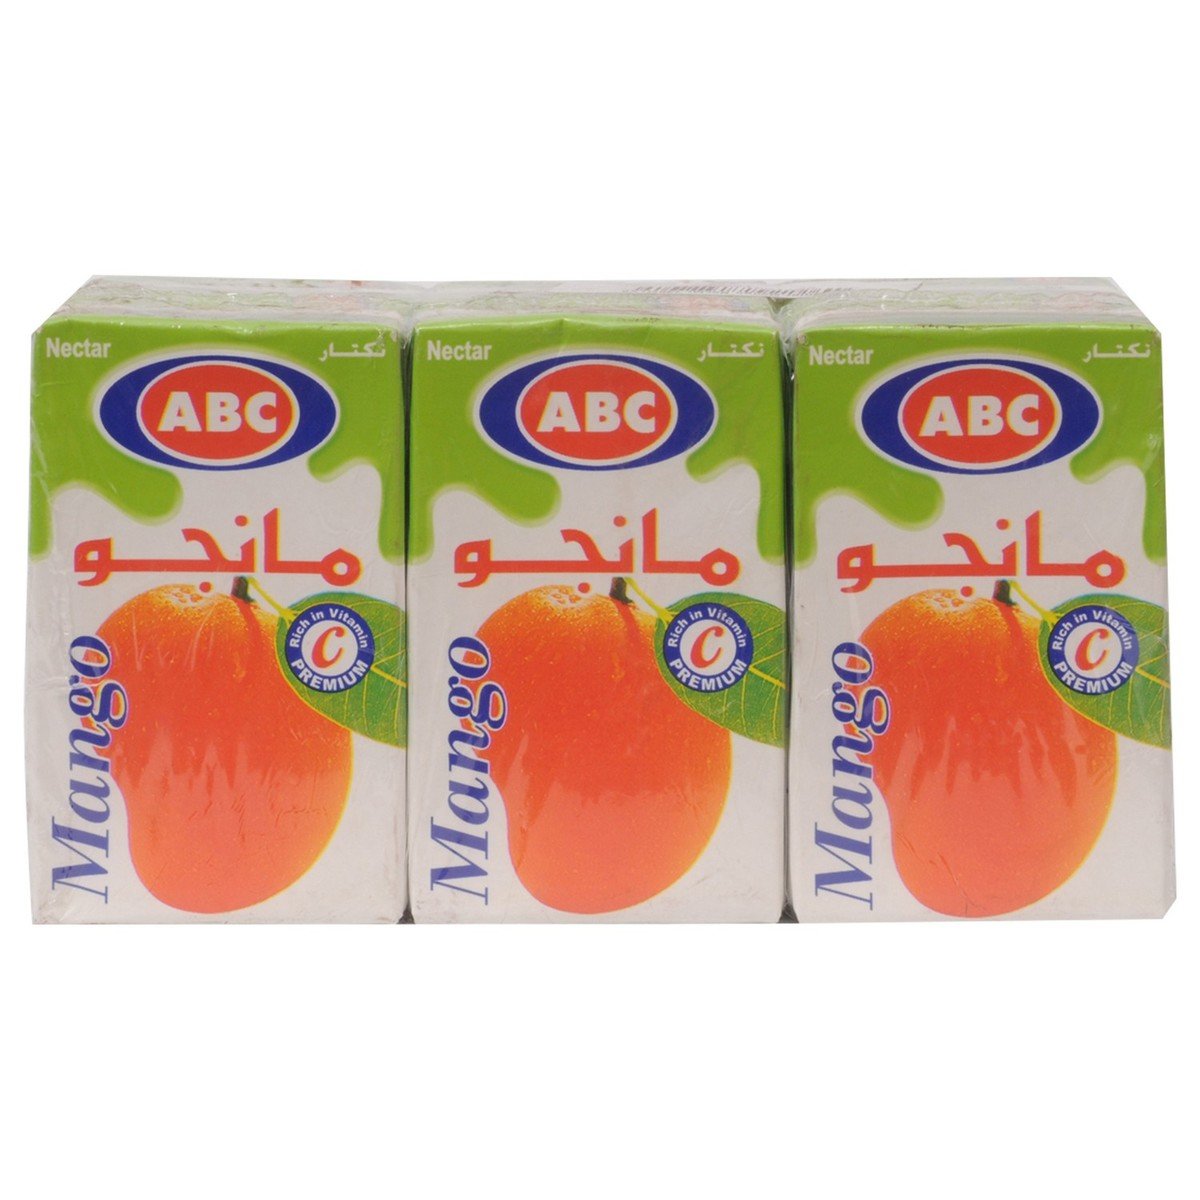 ABC Mango Nectar 250ml x 6pcs